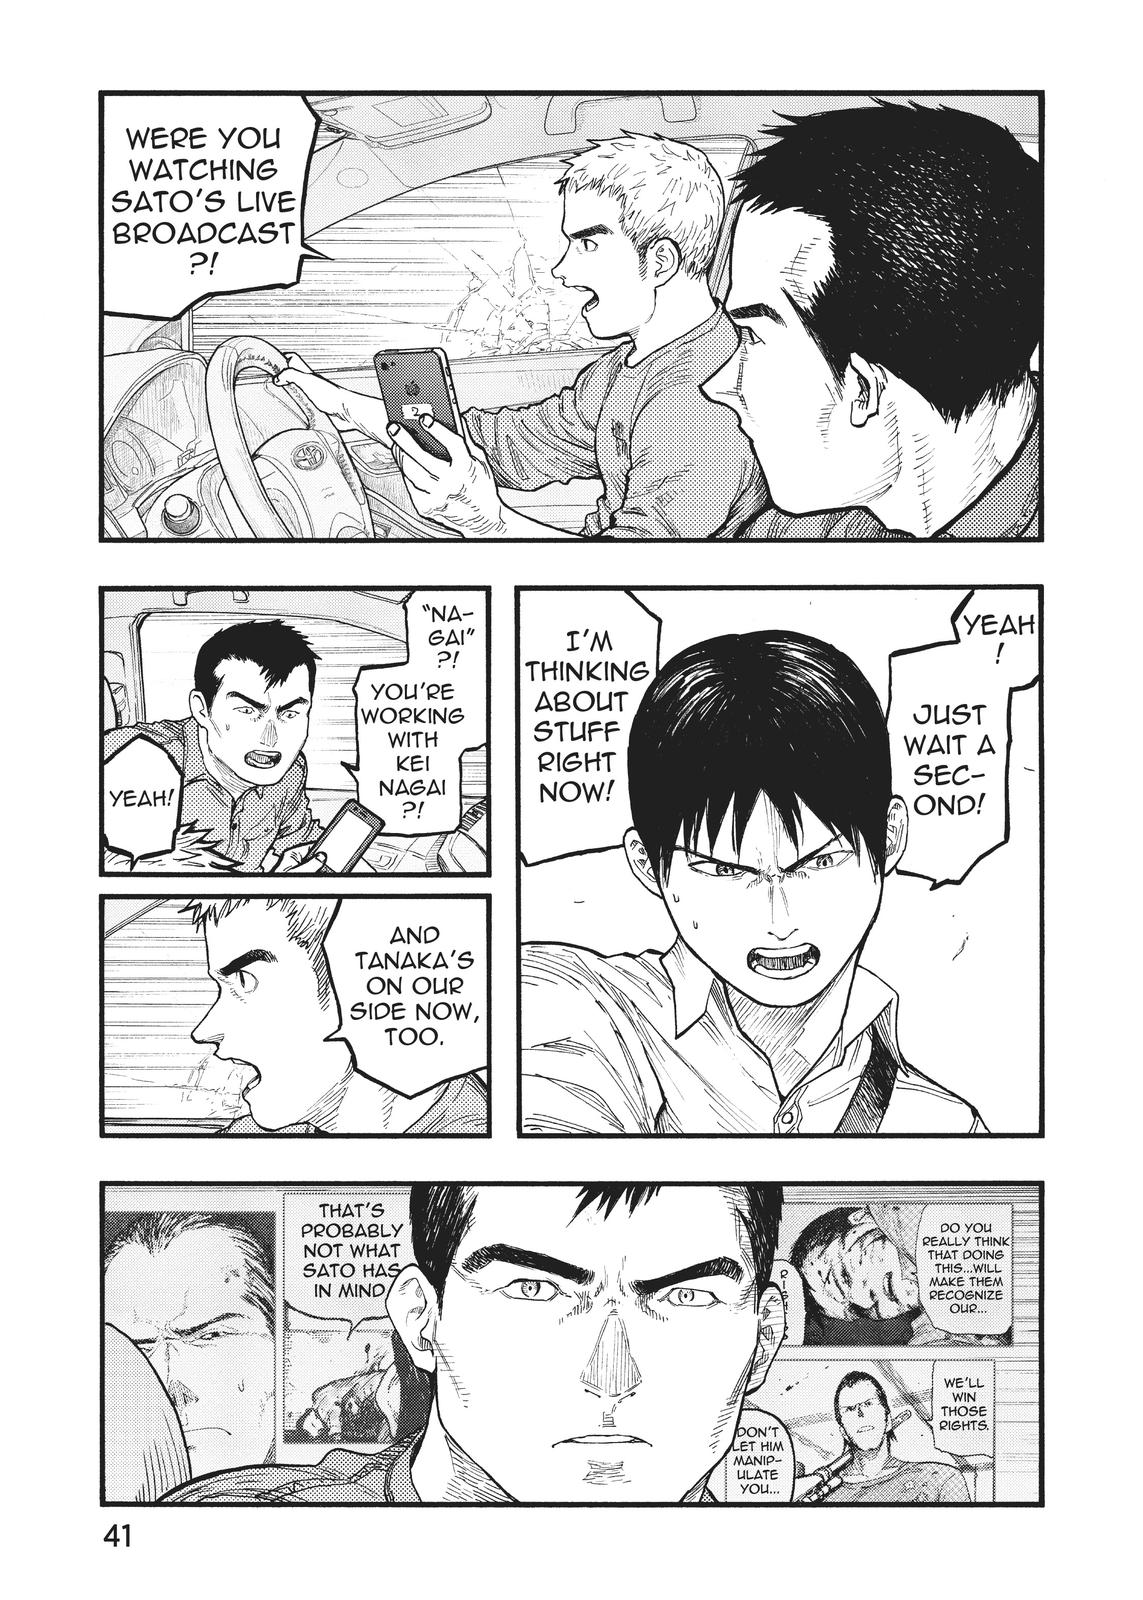 Manga and Stuff — Manga: Ajin: Demi-Human / 亜人 by Gamon Sakurai and